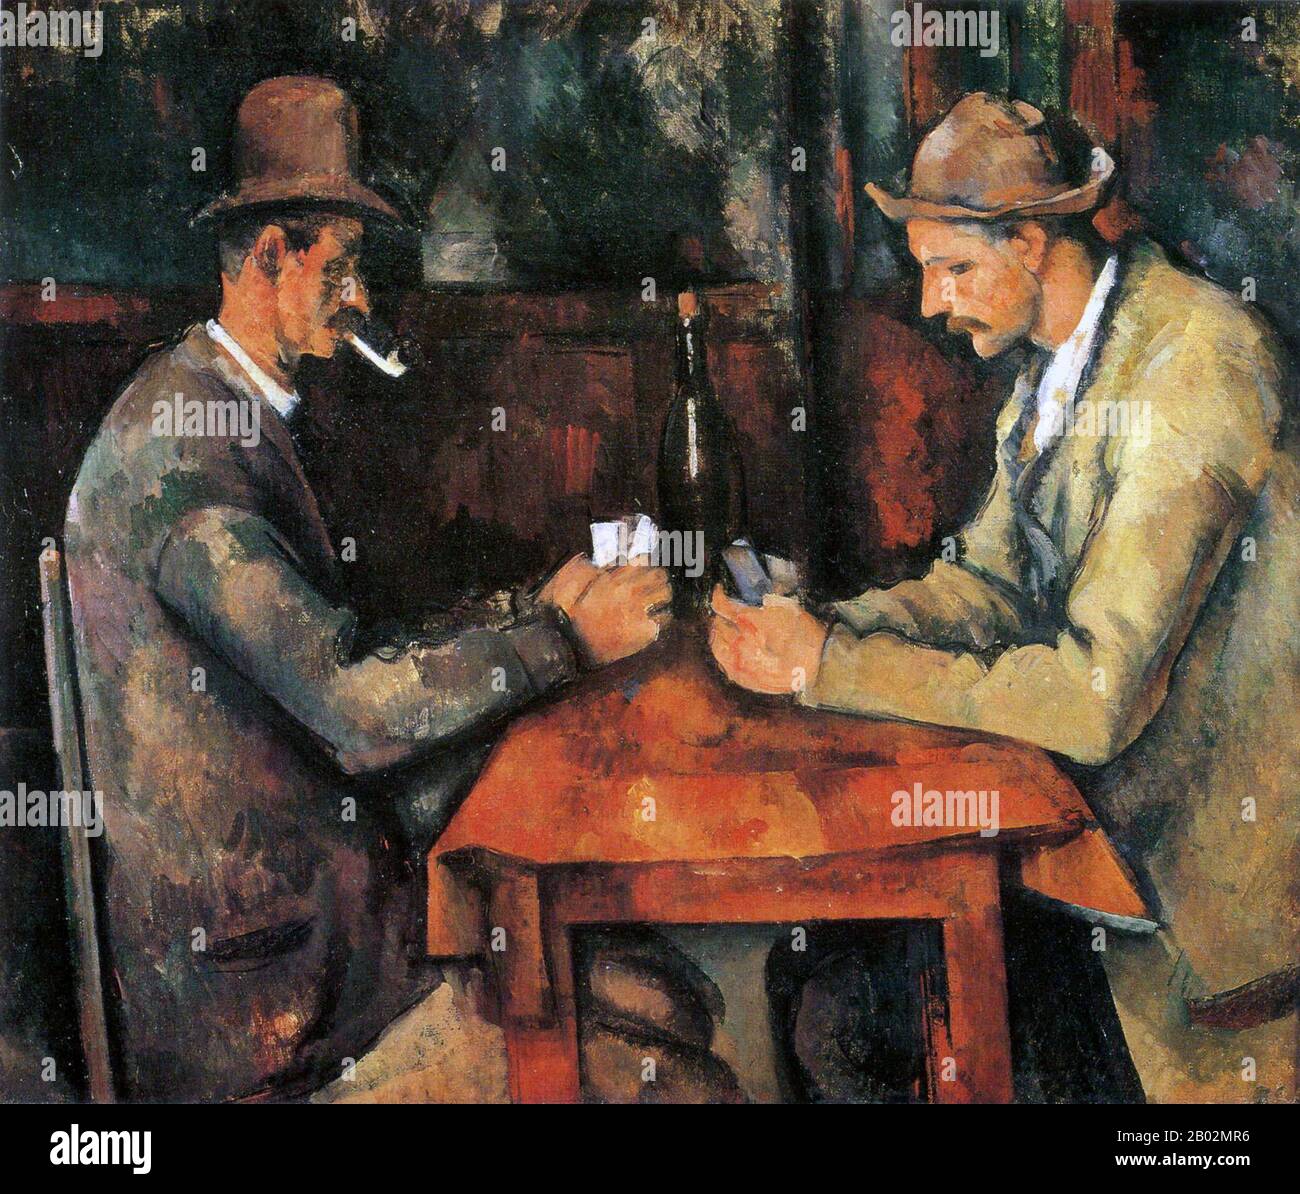 The Card Players ist eine Serie von Ölbildern des französischen Post-Impressionisten Paul Cézanne. Gemalt während Cézannes Endzeit Anfang der 1890er Jahre, gibt es fünf Gemälde in der Serie. Die Versionen variieren in der Größe und in der Anzahl der abgebildeten Spieler. Cézanne hat auch zahlreiche Zeichnungen und Studien zur Vorbereitung der Card-Player-Serie abgeschlossen. Eine Version Der Kartenspieler wurde 2011 an die Royal Family of Qatar zu einem Preis verkauft, der unterschiedlich auf 250 bis 300 Millionen Dollar geschätzt wurde und damit das teuerste Kunstwerk ist, das jemals verkauft wurde. Stockfoto